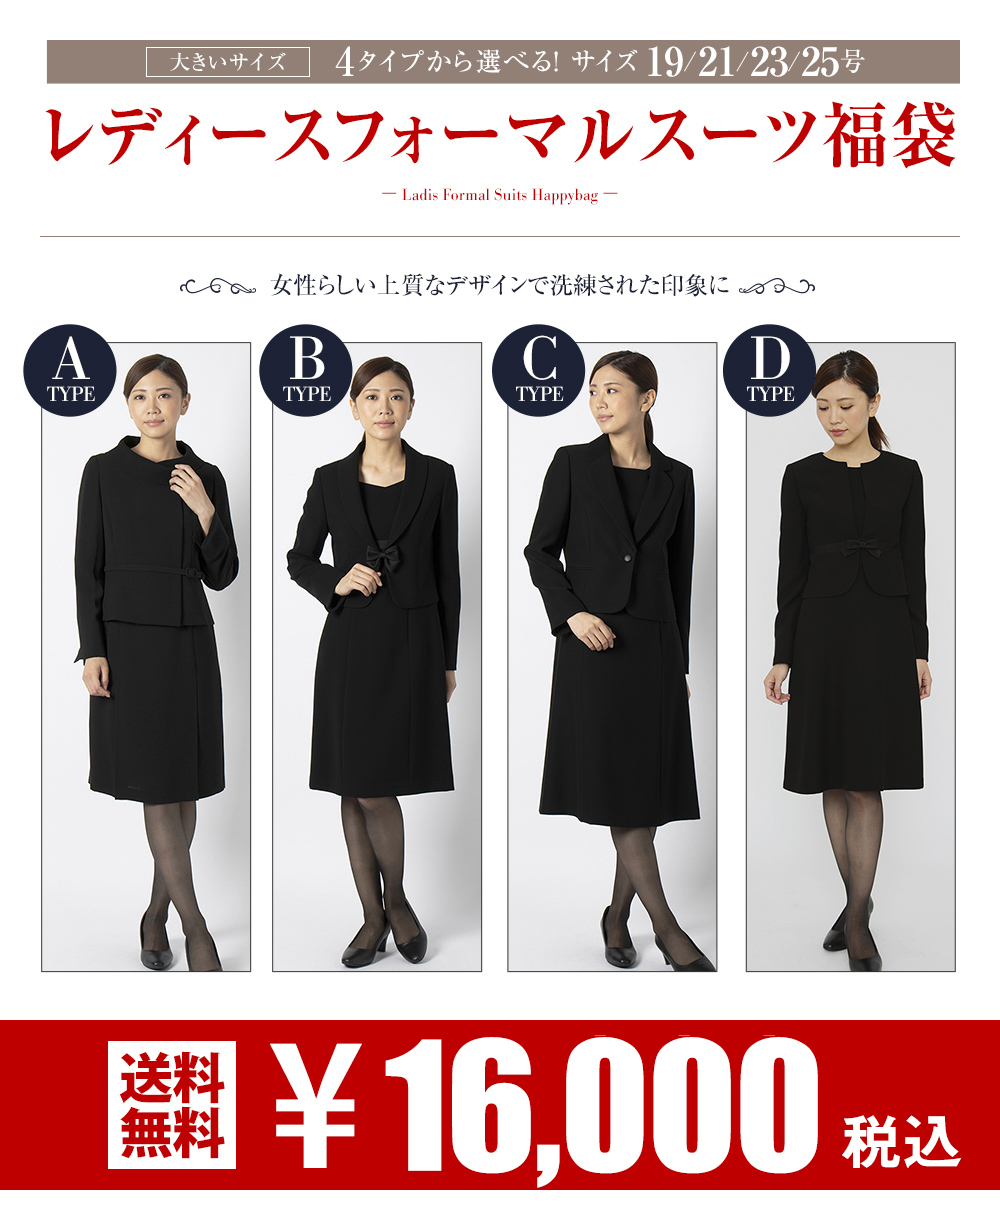 楽天市場 大きいサイズ Aoki レディースフォーマル スーツ福袋 おすすめ Aokiオンライン 楽天市場店